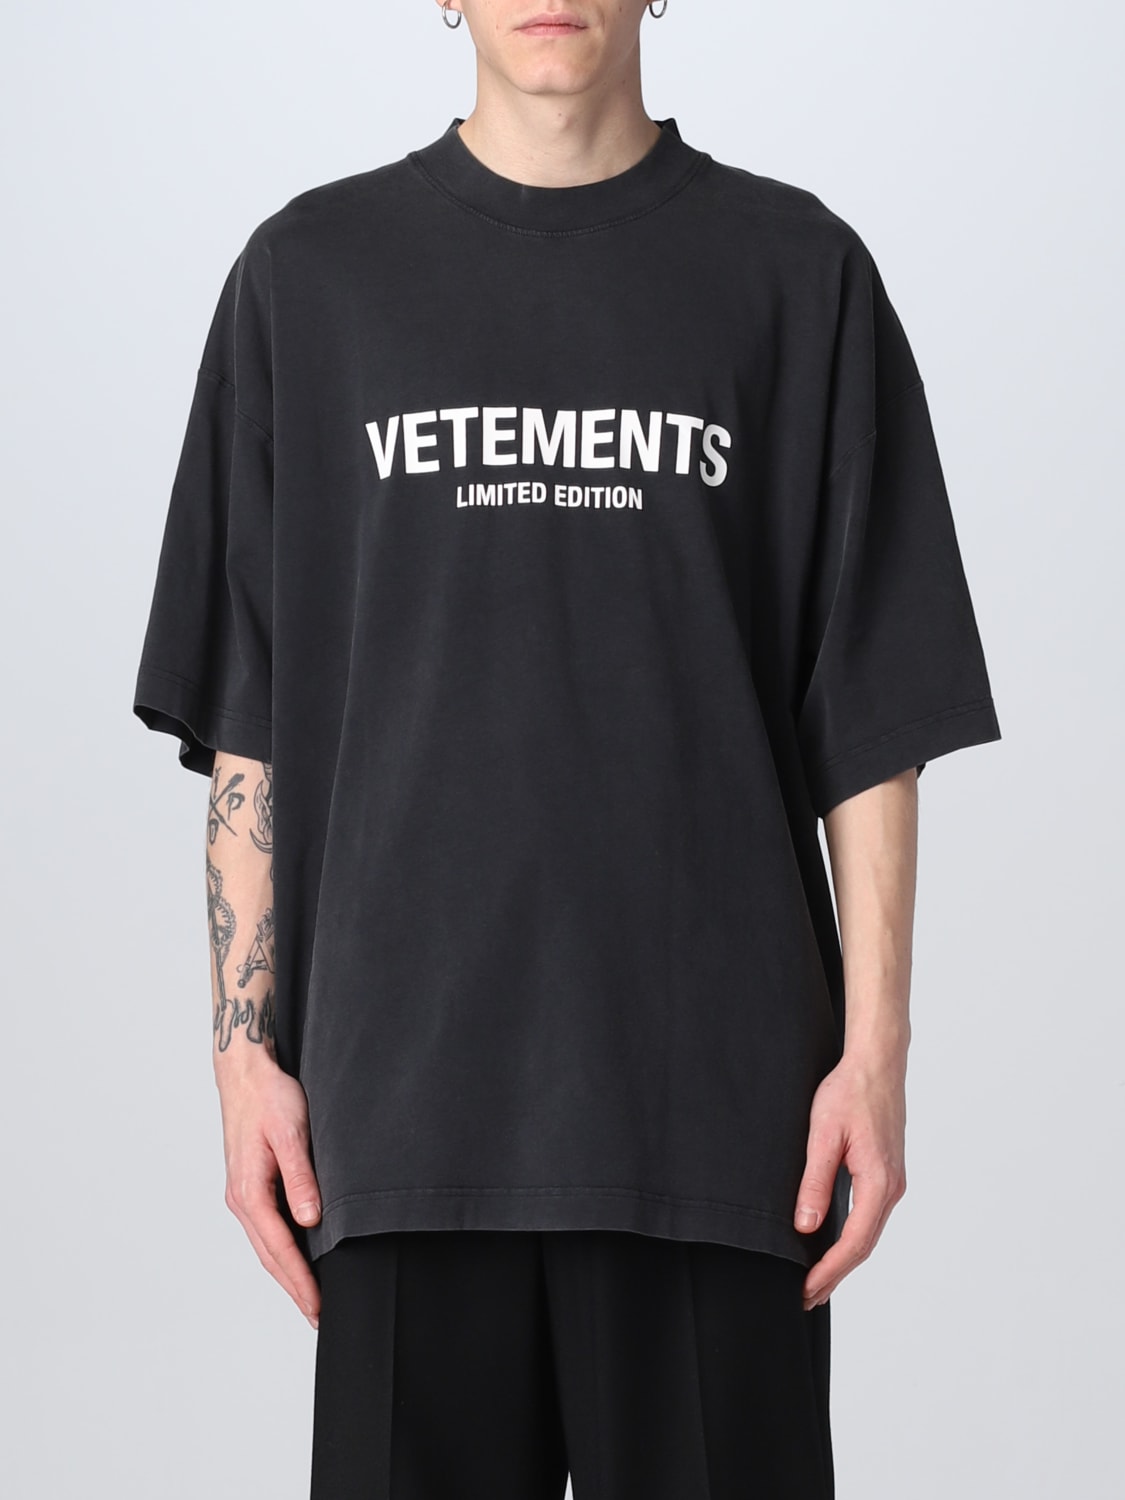 6,600円VETEMENTS メンズブラックSTAFF Tシャツ Y46